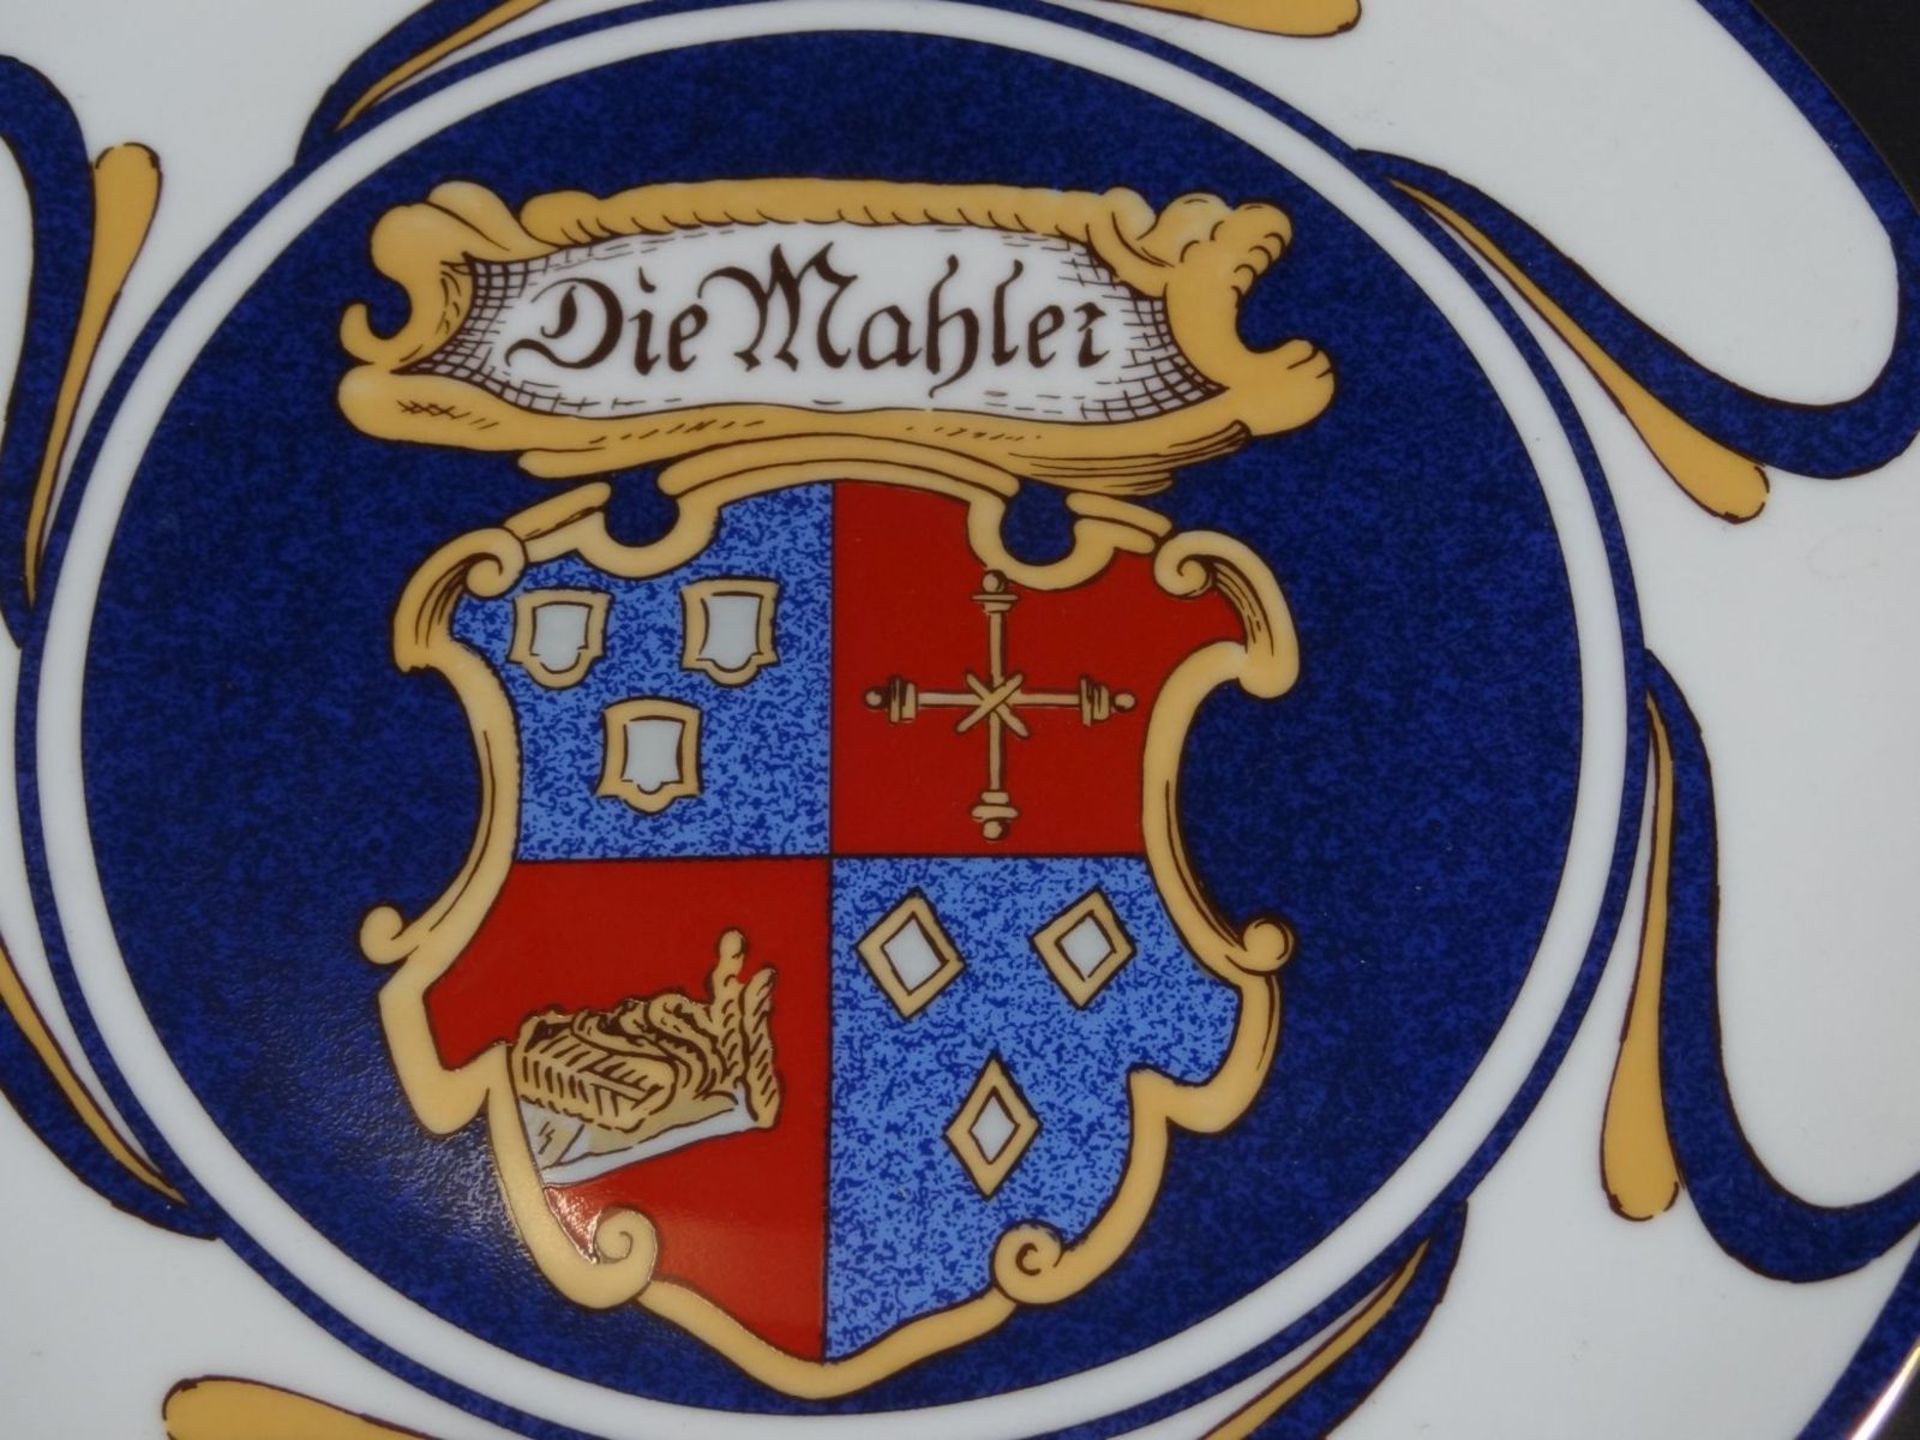 Teller mit Wappen der Kölner Malerzunft "Heinrich", D-24,5 cm - Bild 2 aus 5